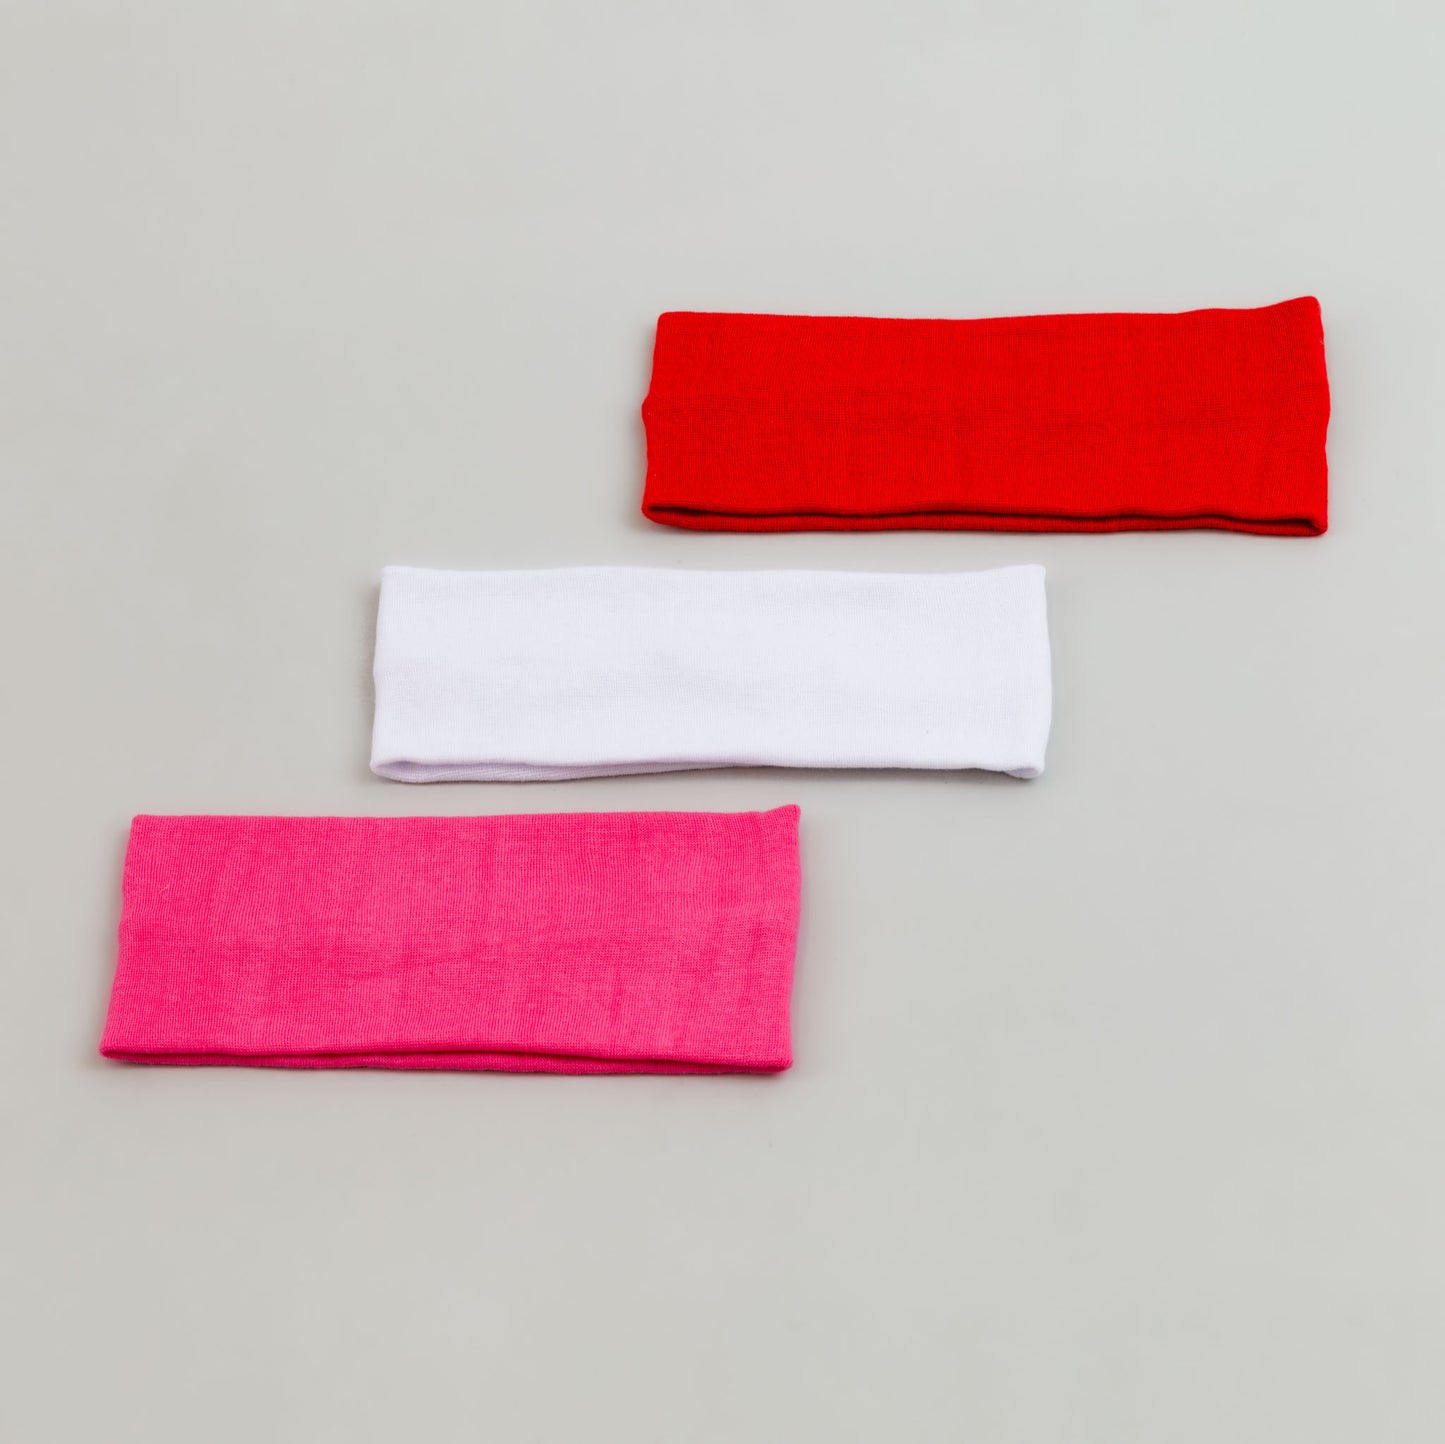 Bentiță de păr simplă, lățime 6,5 cm, set 3 buc - Roșu, Roz, Alb